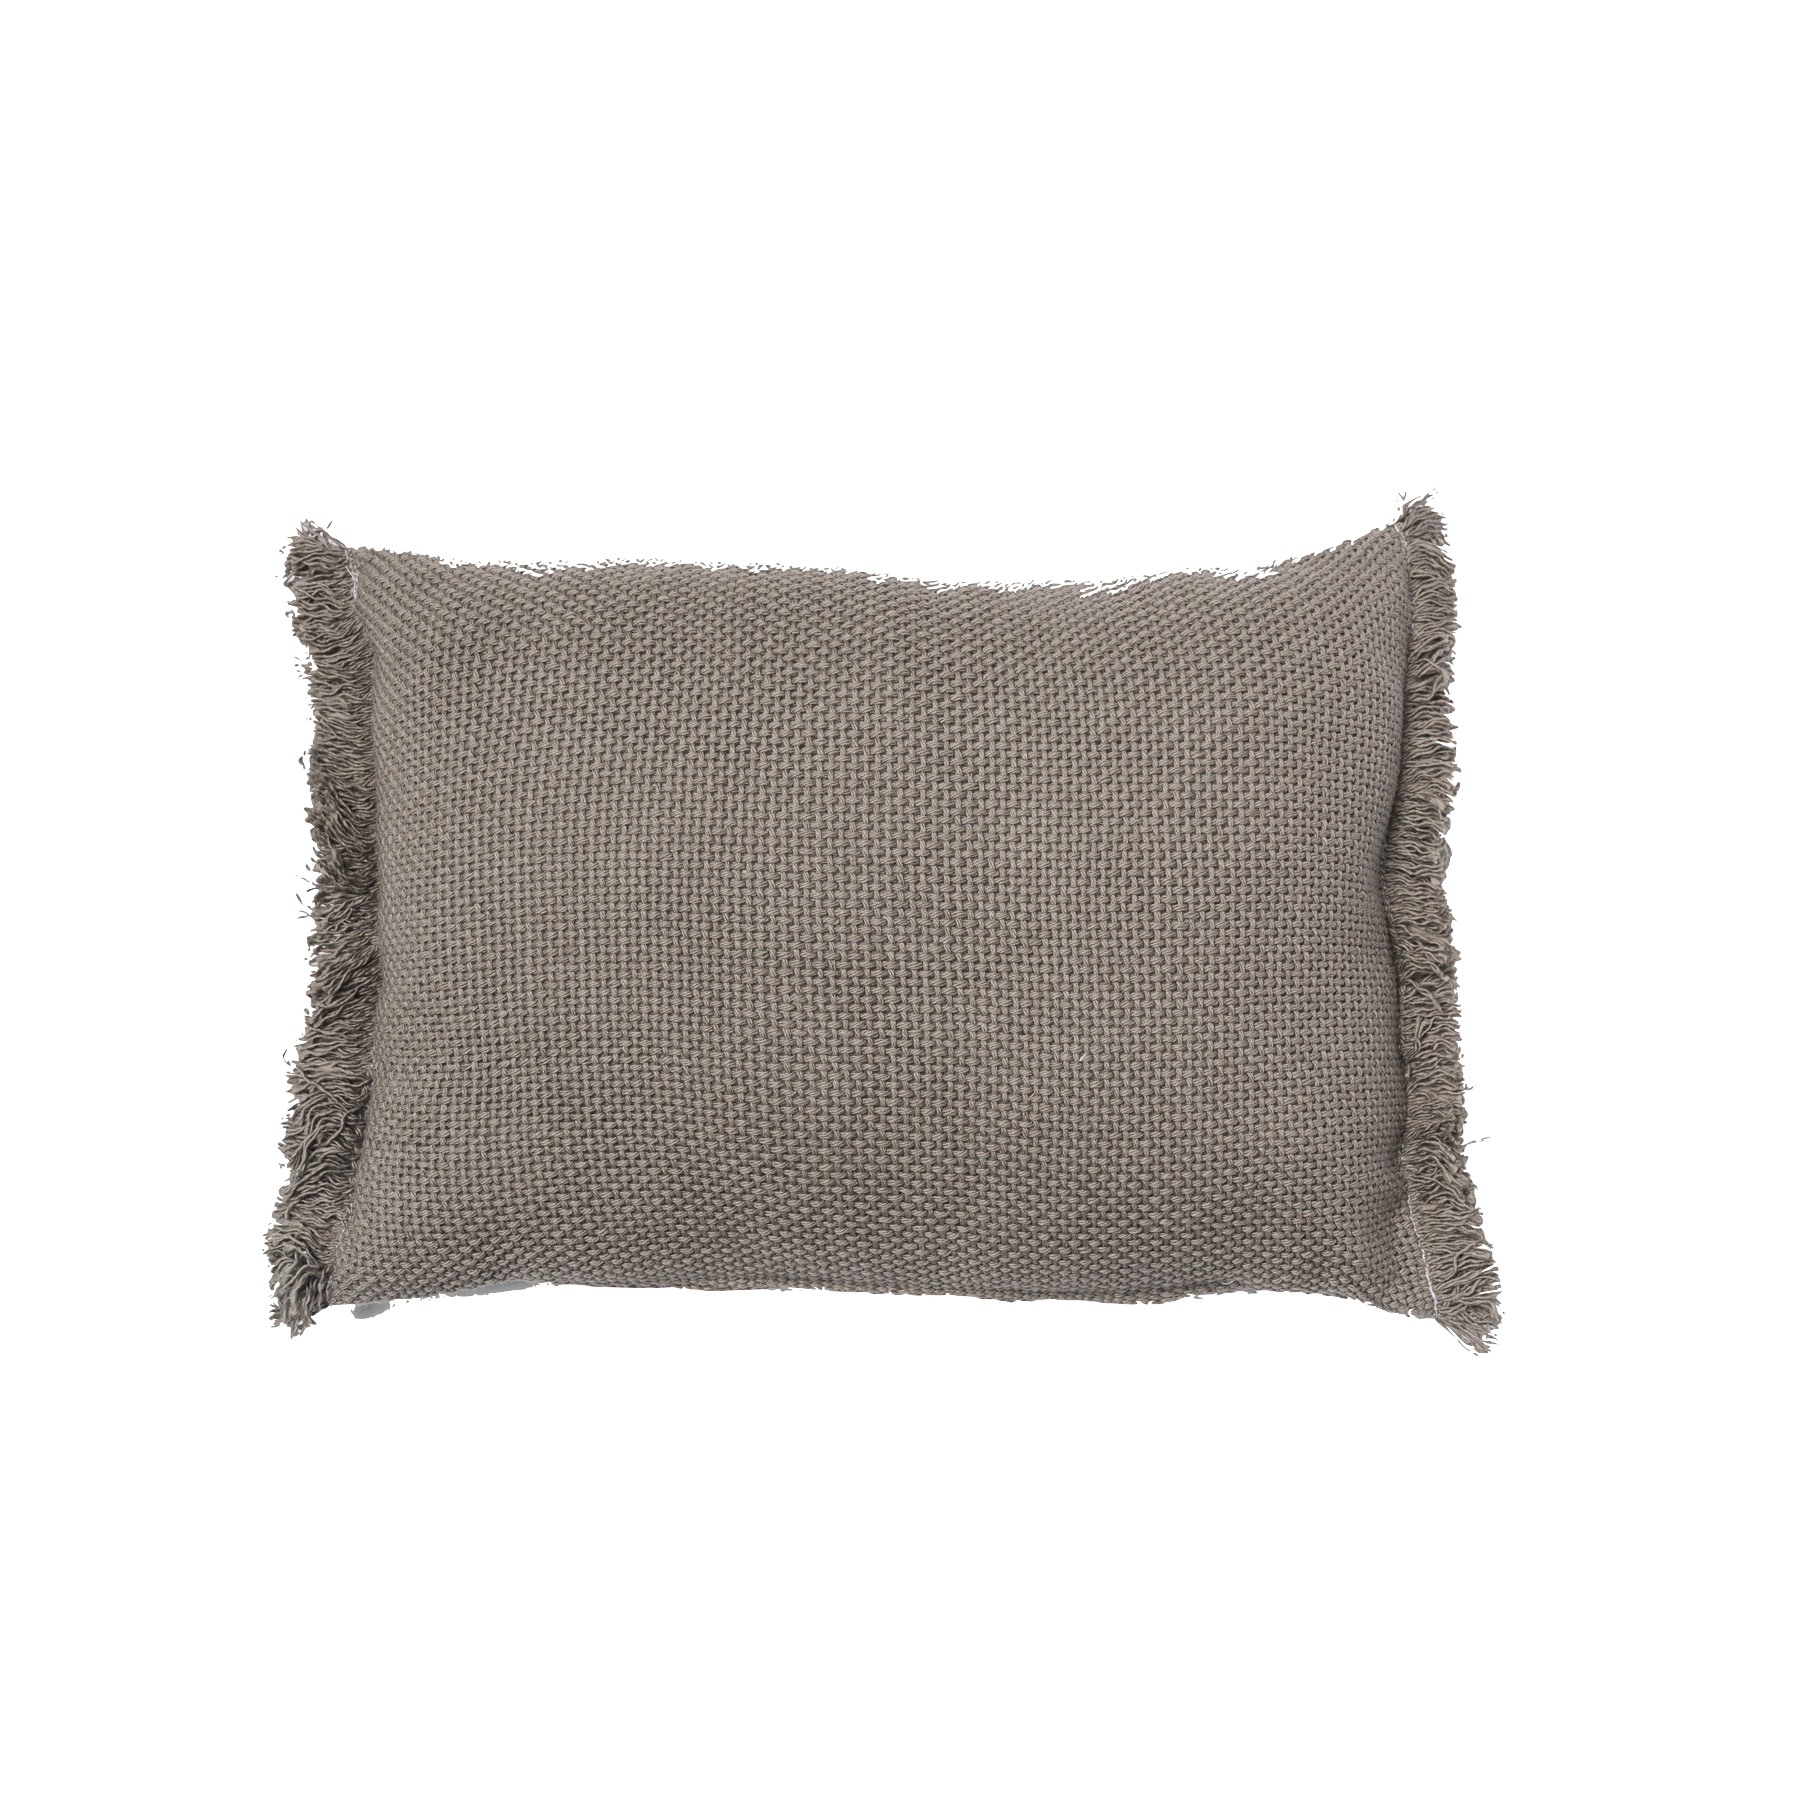 Small gray lumbar pillow